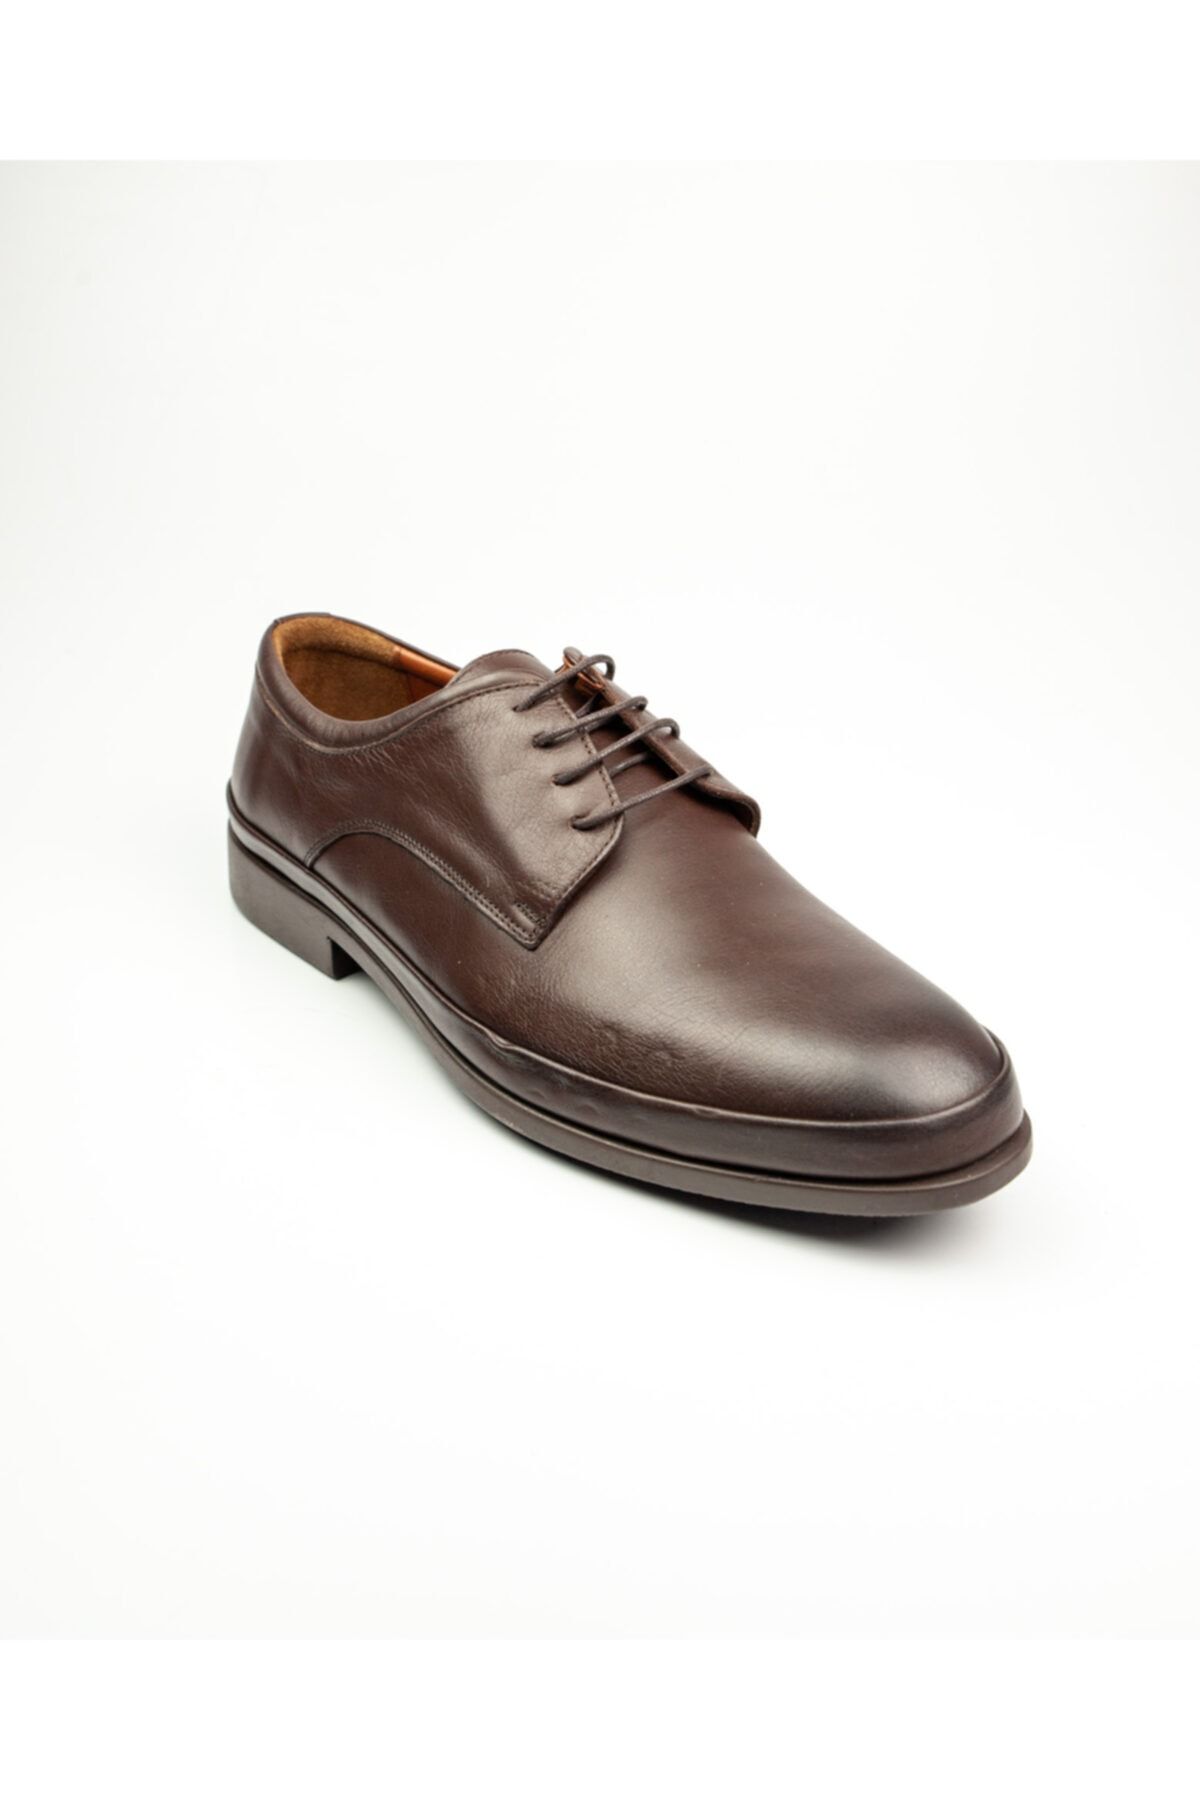 JAMES FRANCO 4000 Kahverengi Deri Klasik Erkek Ayakkabı